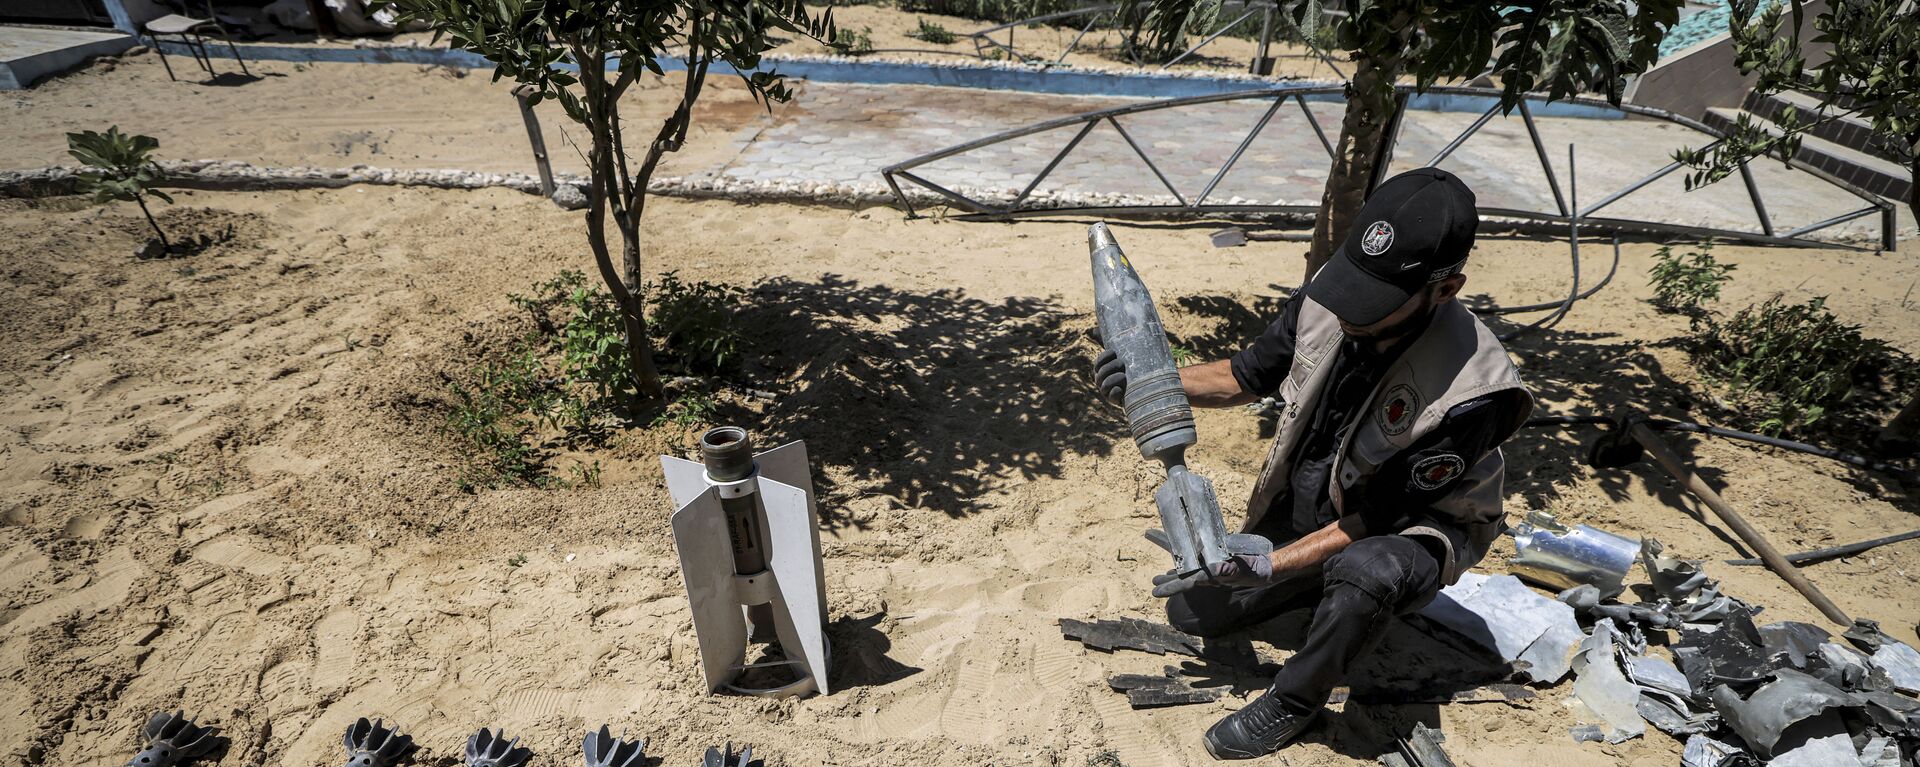 خبراء المتفجرات من حماس يقومون بإزالة قنابل وصواريخ قوات الطيران الحربي التي لم تنفجر في خان يونس، بعد تبادل إطلاق النار بين قطاع غزة وإسرائيل في مايو الماضي، 5 يونيو 2021 - سبوتنيك عربي, 1920, 07.05.2022